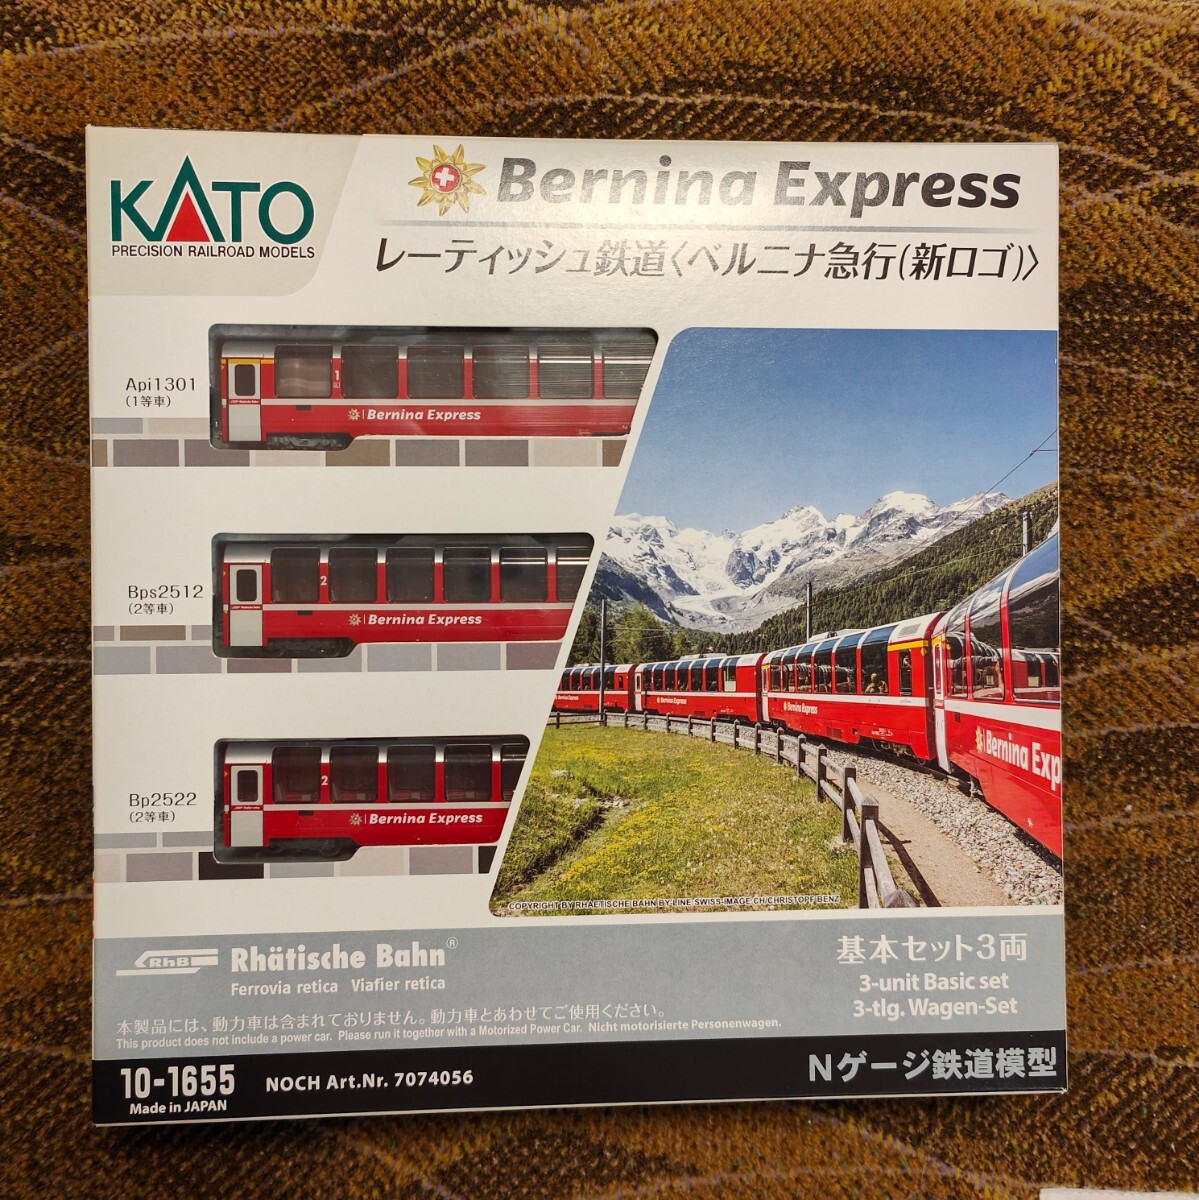 KATO10-1655 レーティッシュ鉄道 ベルニナ急行(新ロゴ) 3両基本セット中古美品の画像1